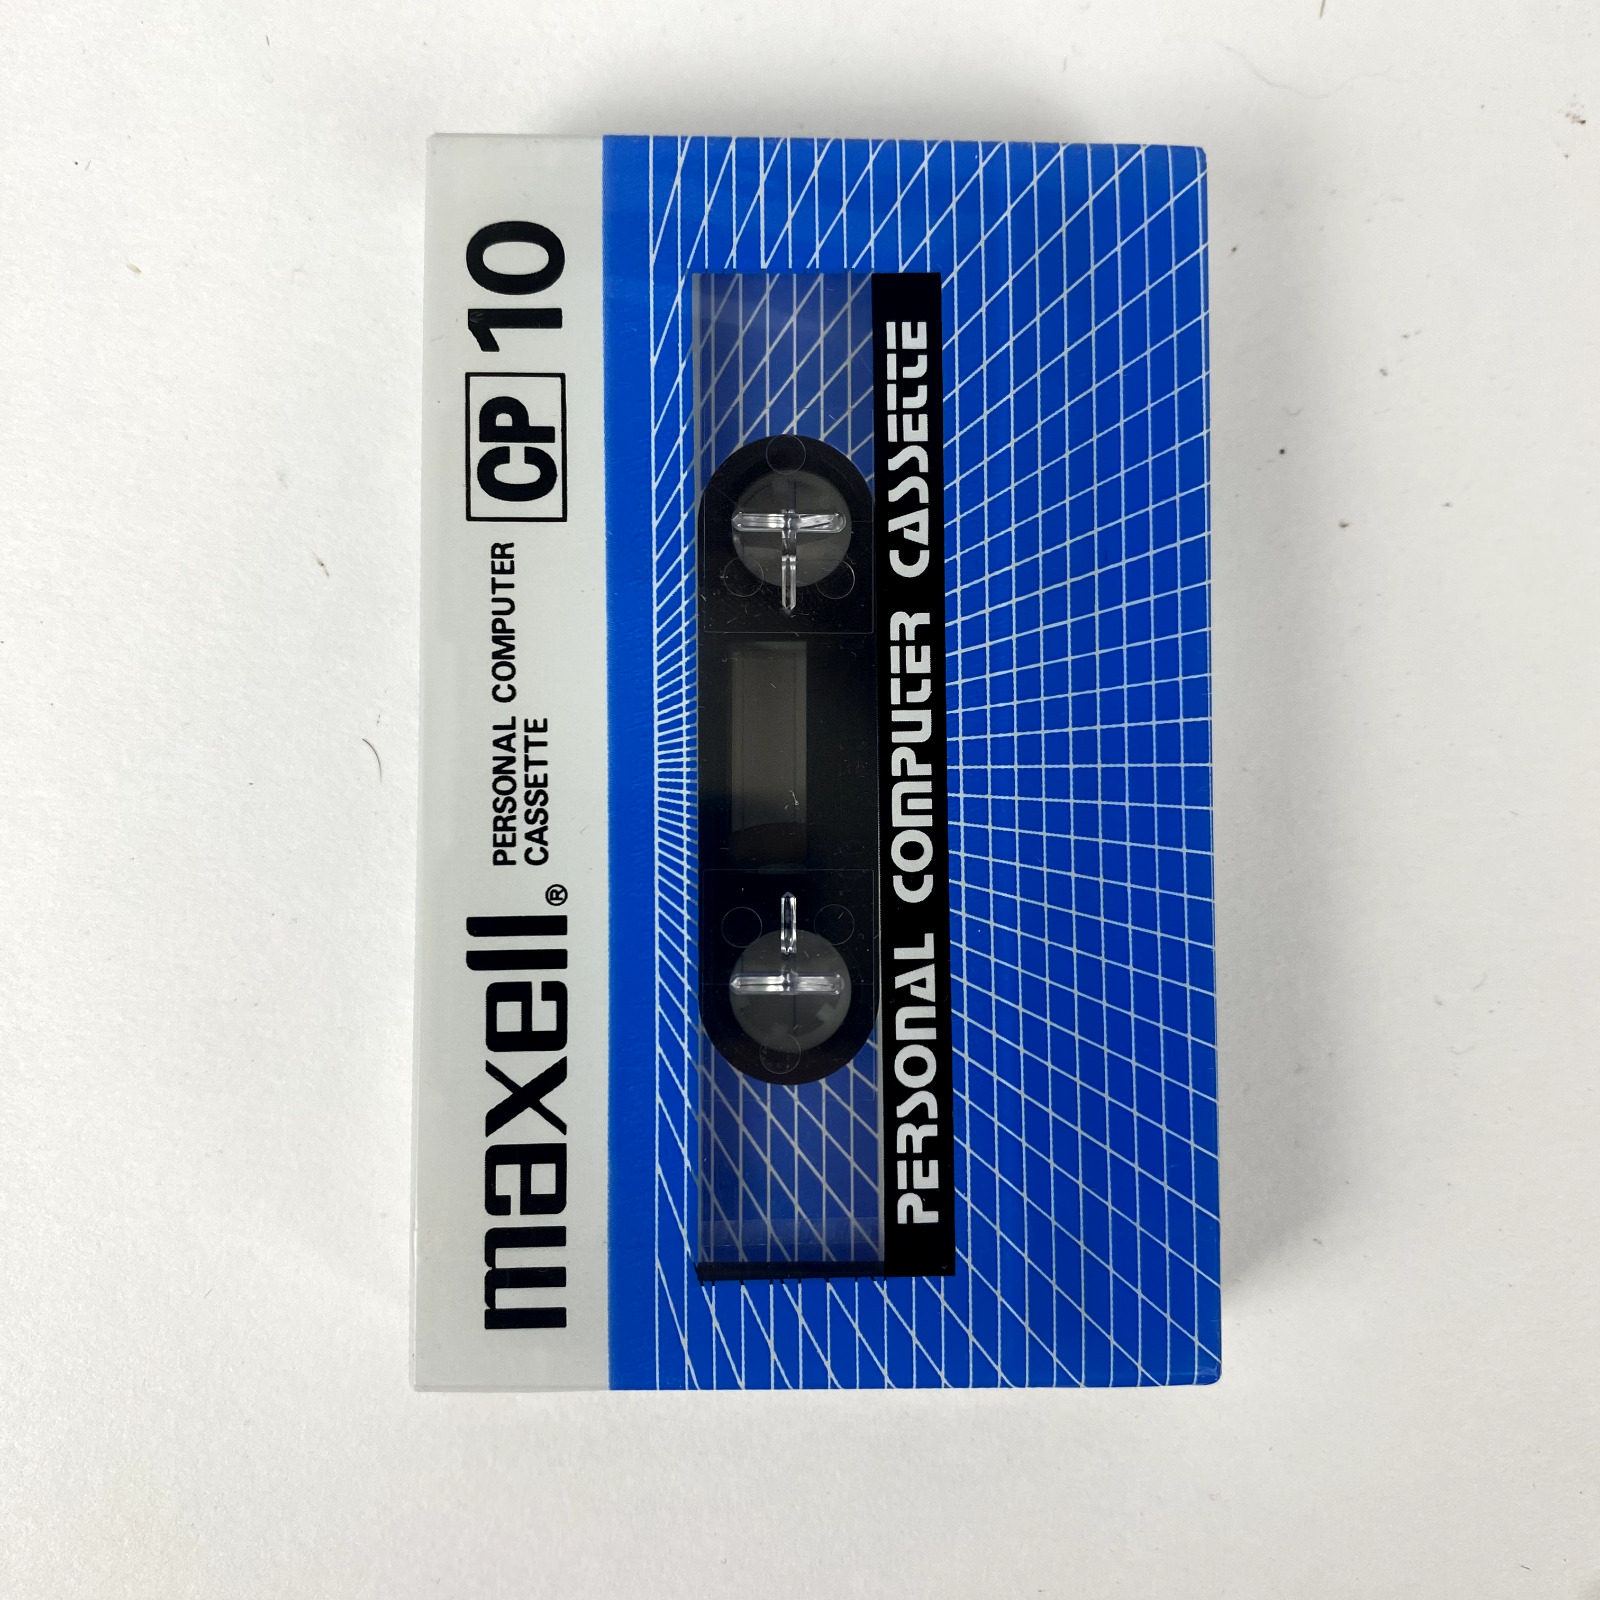 Maxell CP-10 Computer Cassette (Sealed) for Atari, Commodore, TI Computers